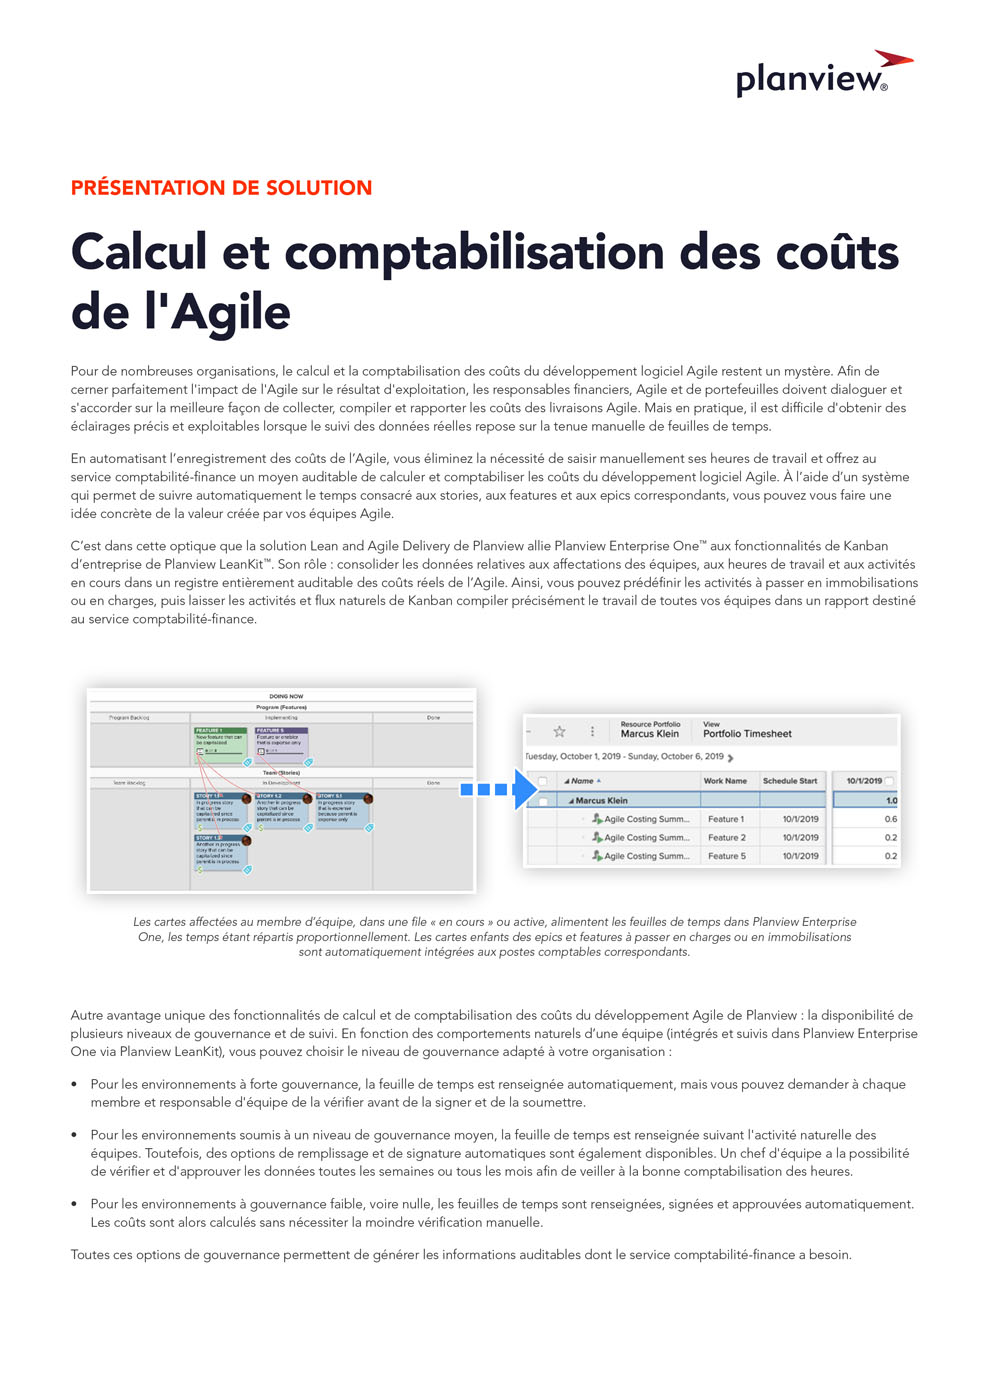 Calcul et comptabilisation des coûts de l'Agile